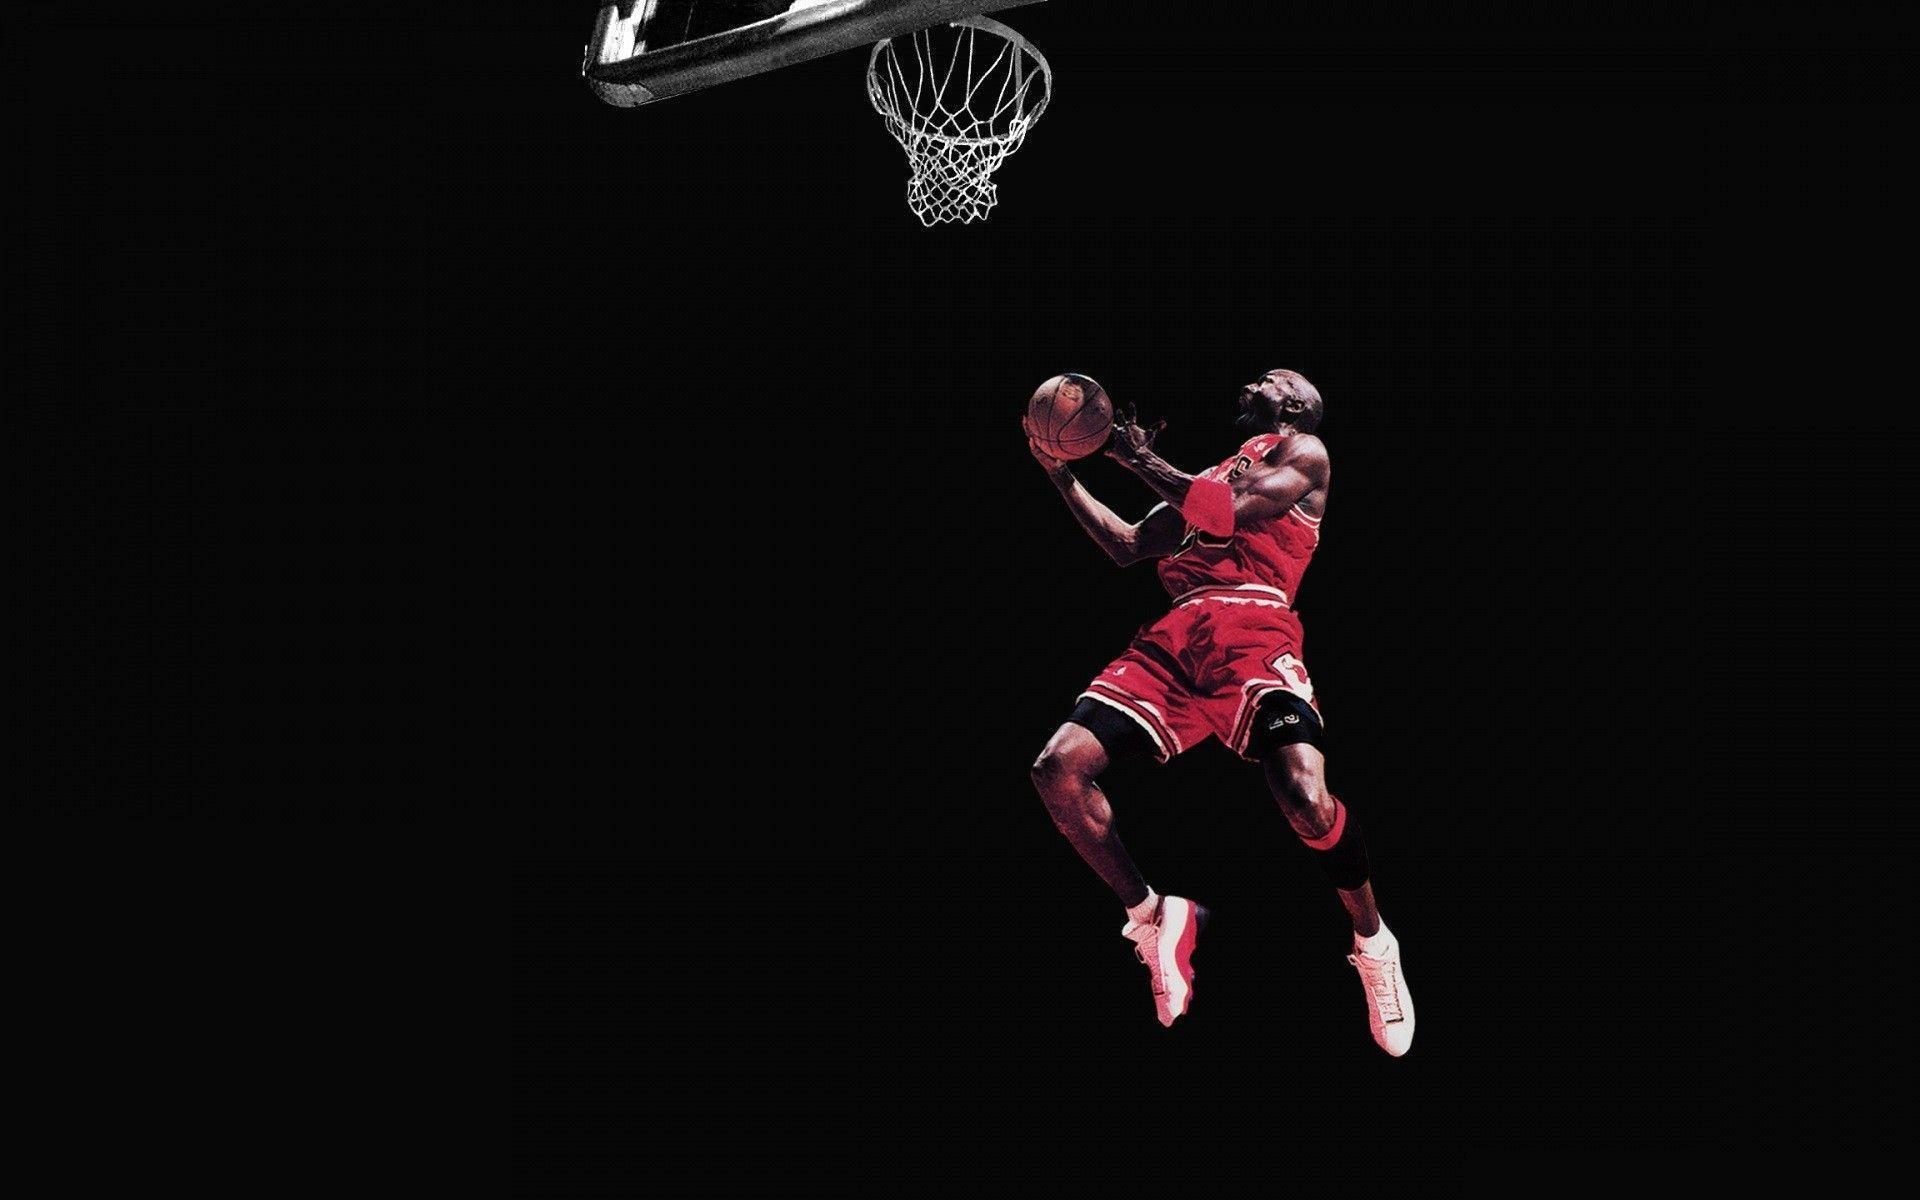 image For > Michael Jordan Signature Dunk Wallpaper